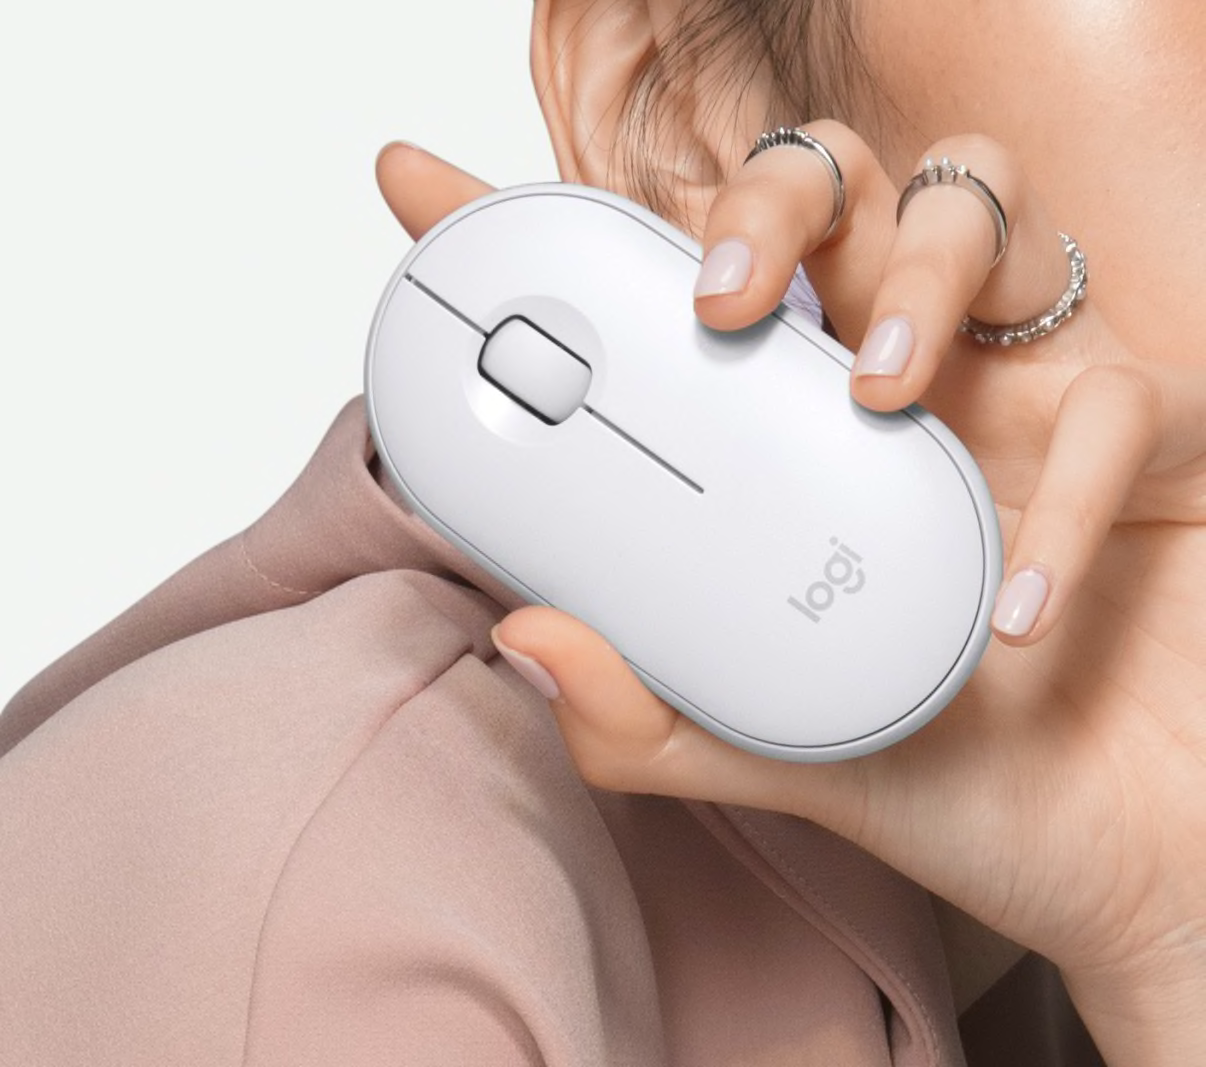 Persona sosteniendo un mouse blanco de computadora